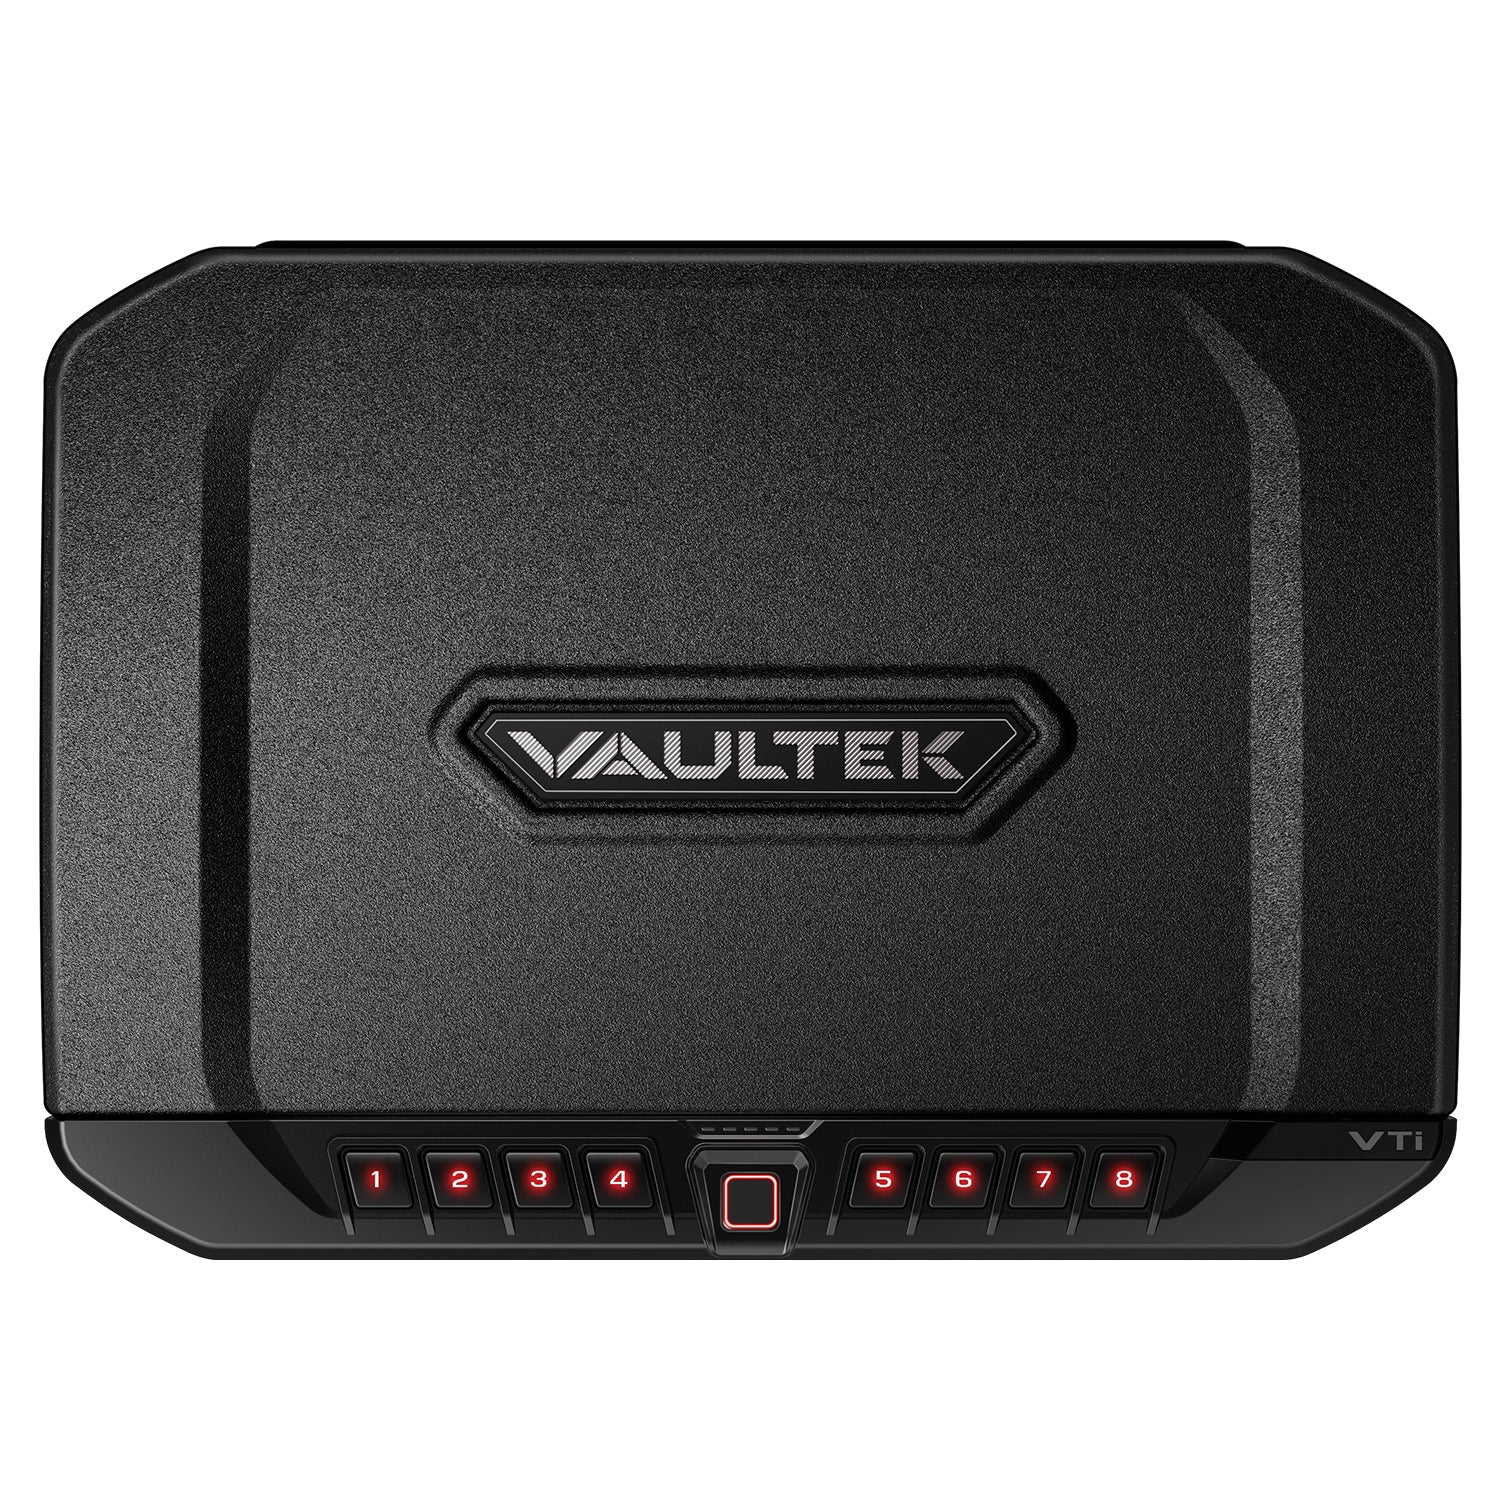 Vaultek - vt full size rugged bluetooth smart safe - MODLOCK